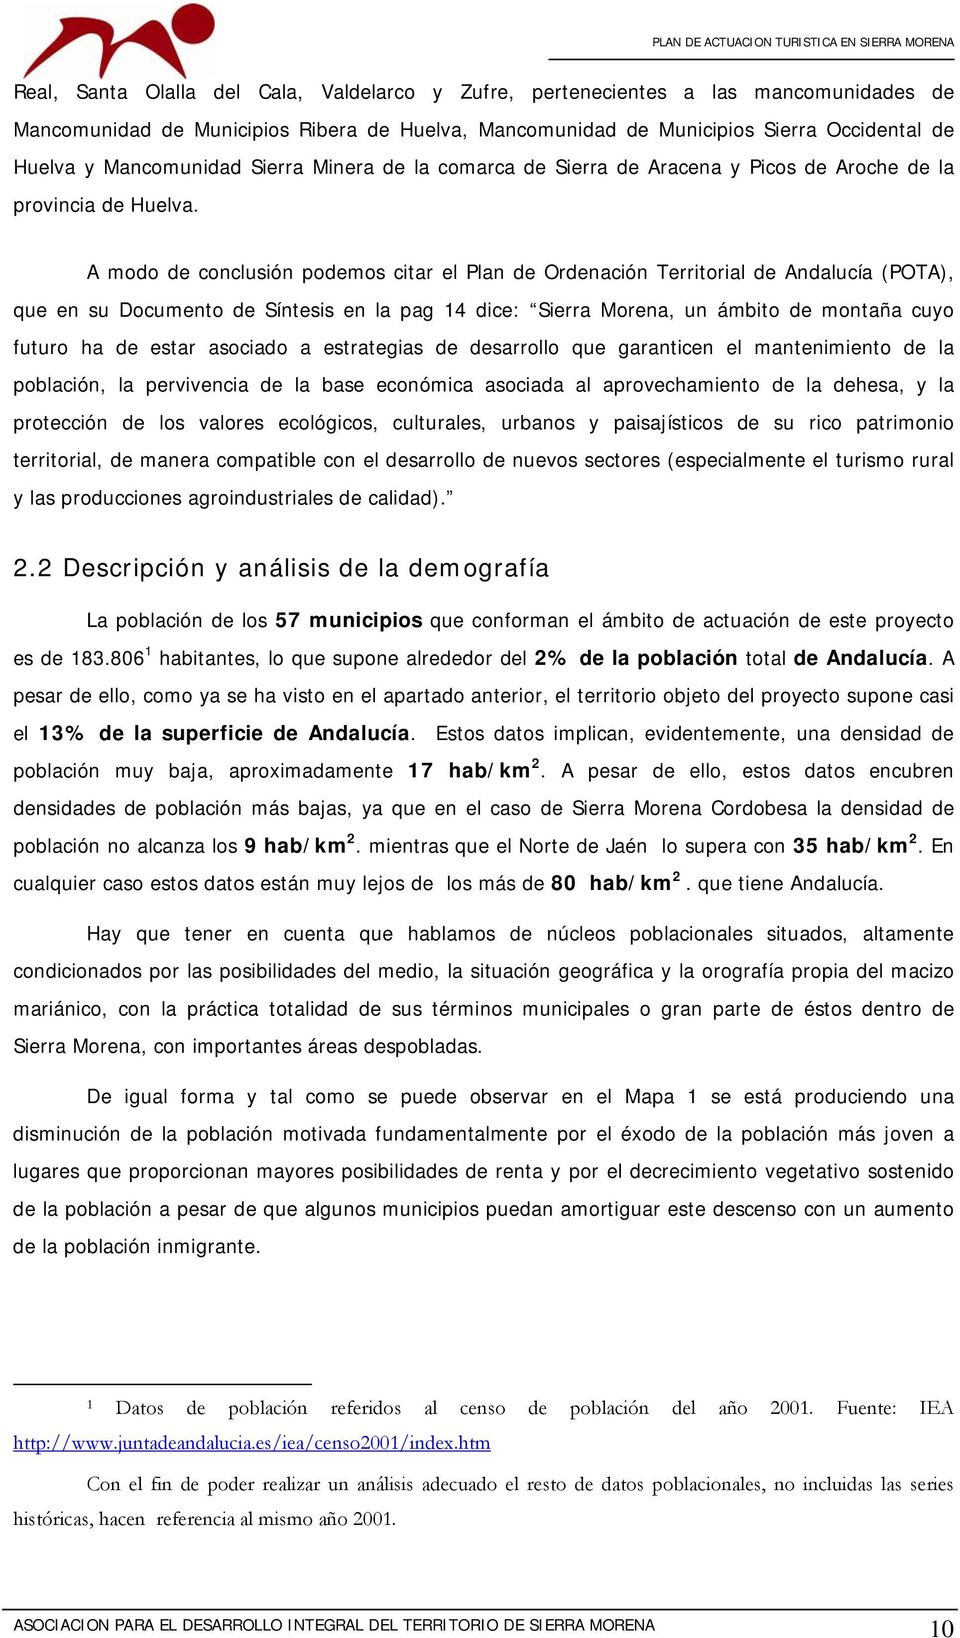 A modo de conclusión podemos citar el Plan de Ordenación Territorial de Andalucía (POTA), que en su Documento de Síntesis en la pag 14 dice: Sierra Morena, un ámbito de montaña cuyo futuro ha de